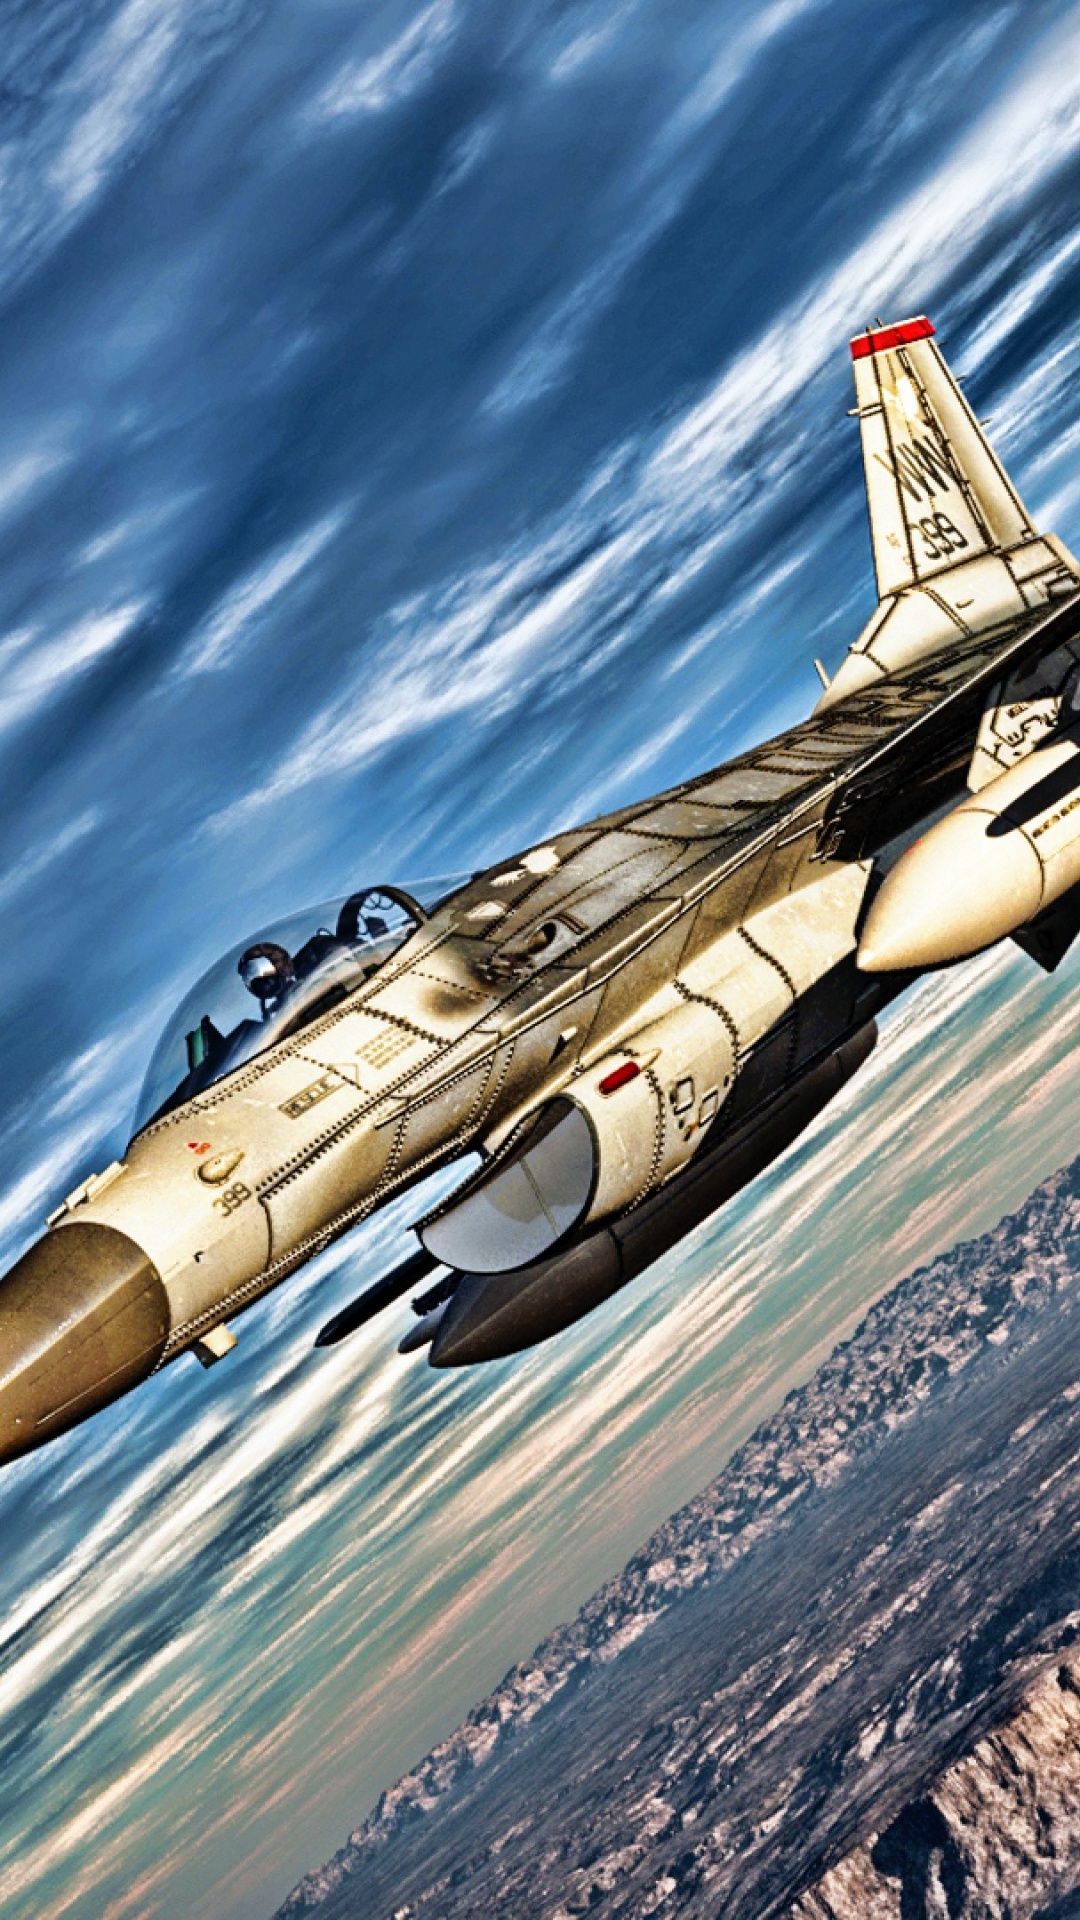 军用飞机, 空军, 火箭飞行器, 航空, 喷气式飞机 壁纸 1080x1920 允许